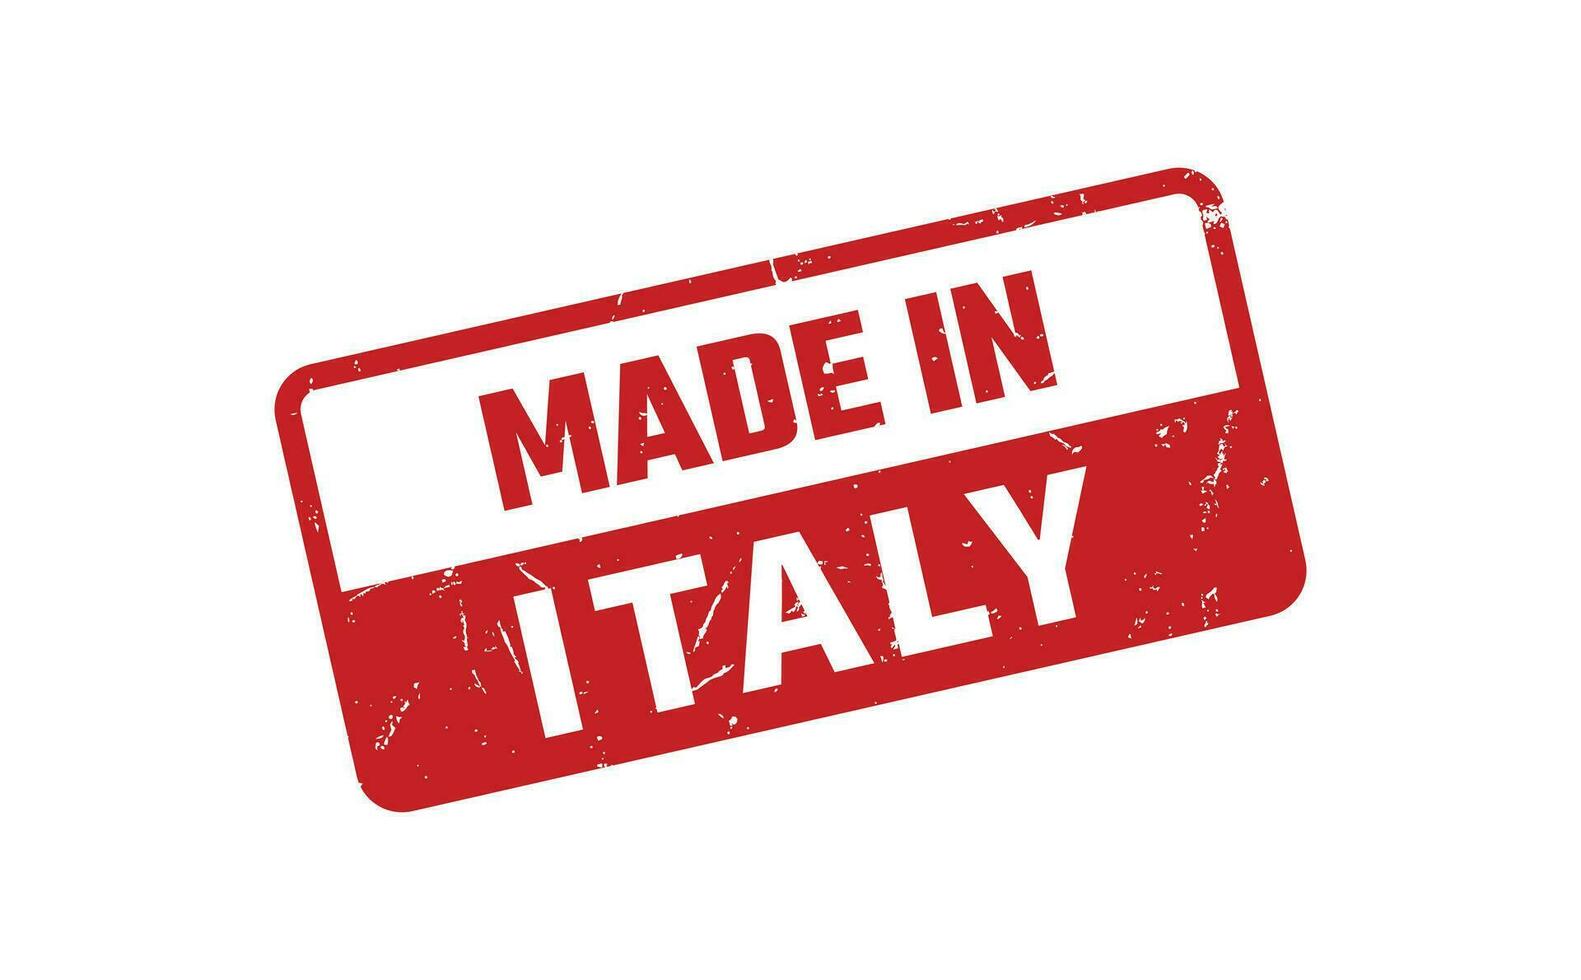 fabriqué dans Italie caoutchouc timbre vecteur